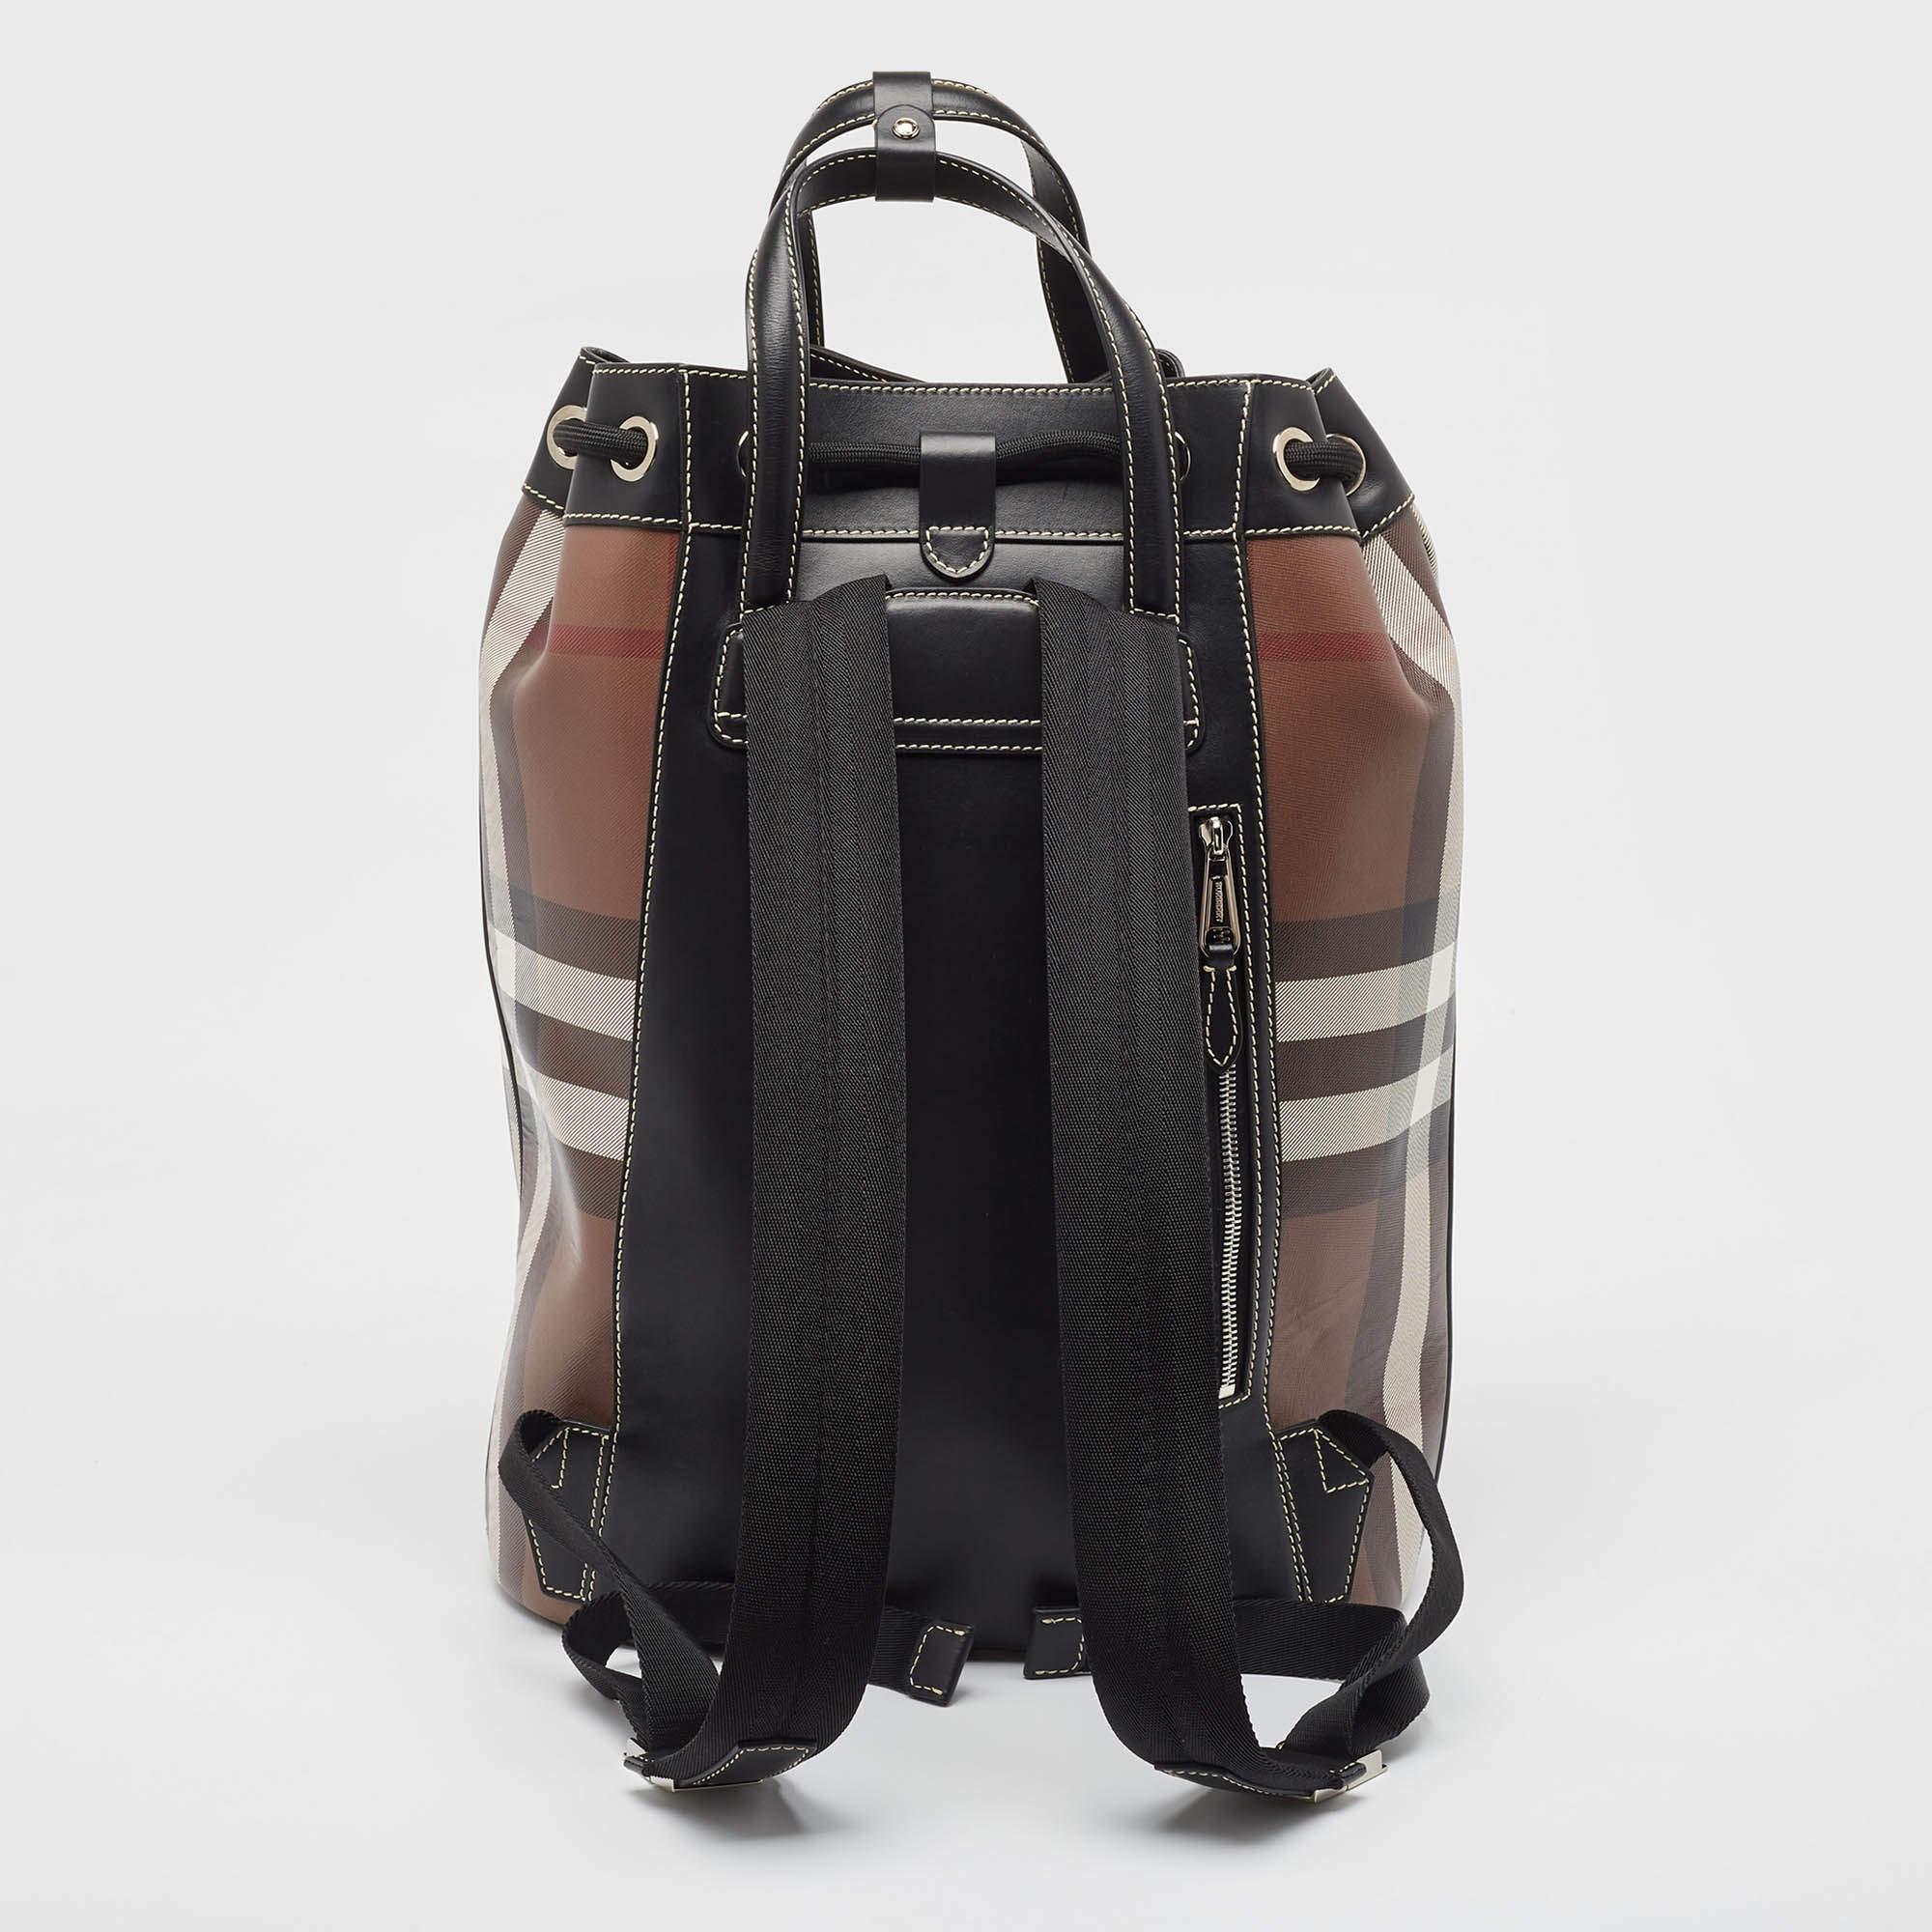 Mit diesem Rucksack von Burberry können Sie Ihren Stil aufwerten. Dieses schicke, mit Präzision und Leidenschaft gefertigte Accessoire verbindet nahtlos Mode und Funktion und bietet eine elegante Lösung für den modernen, mobilen